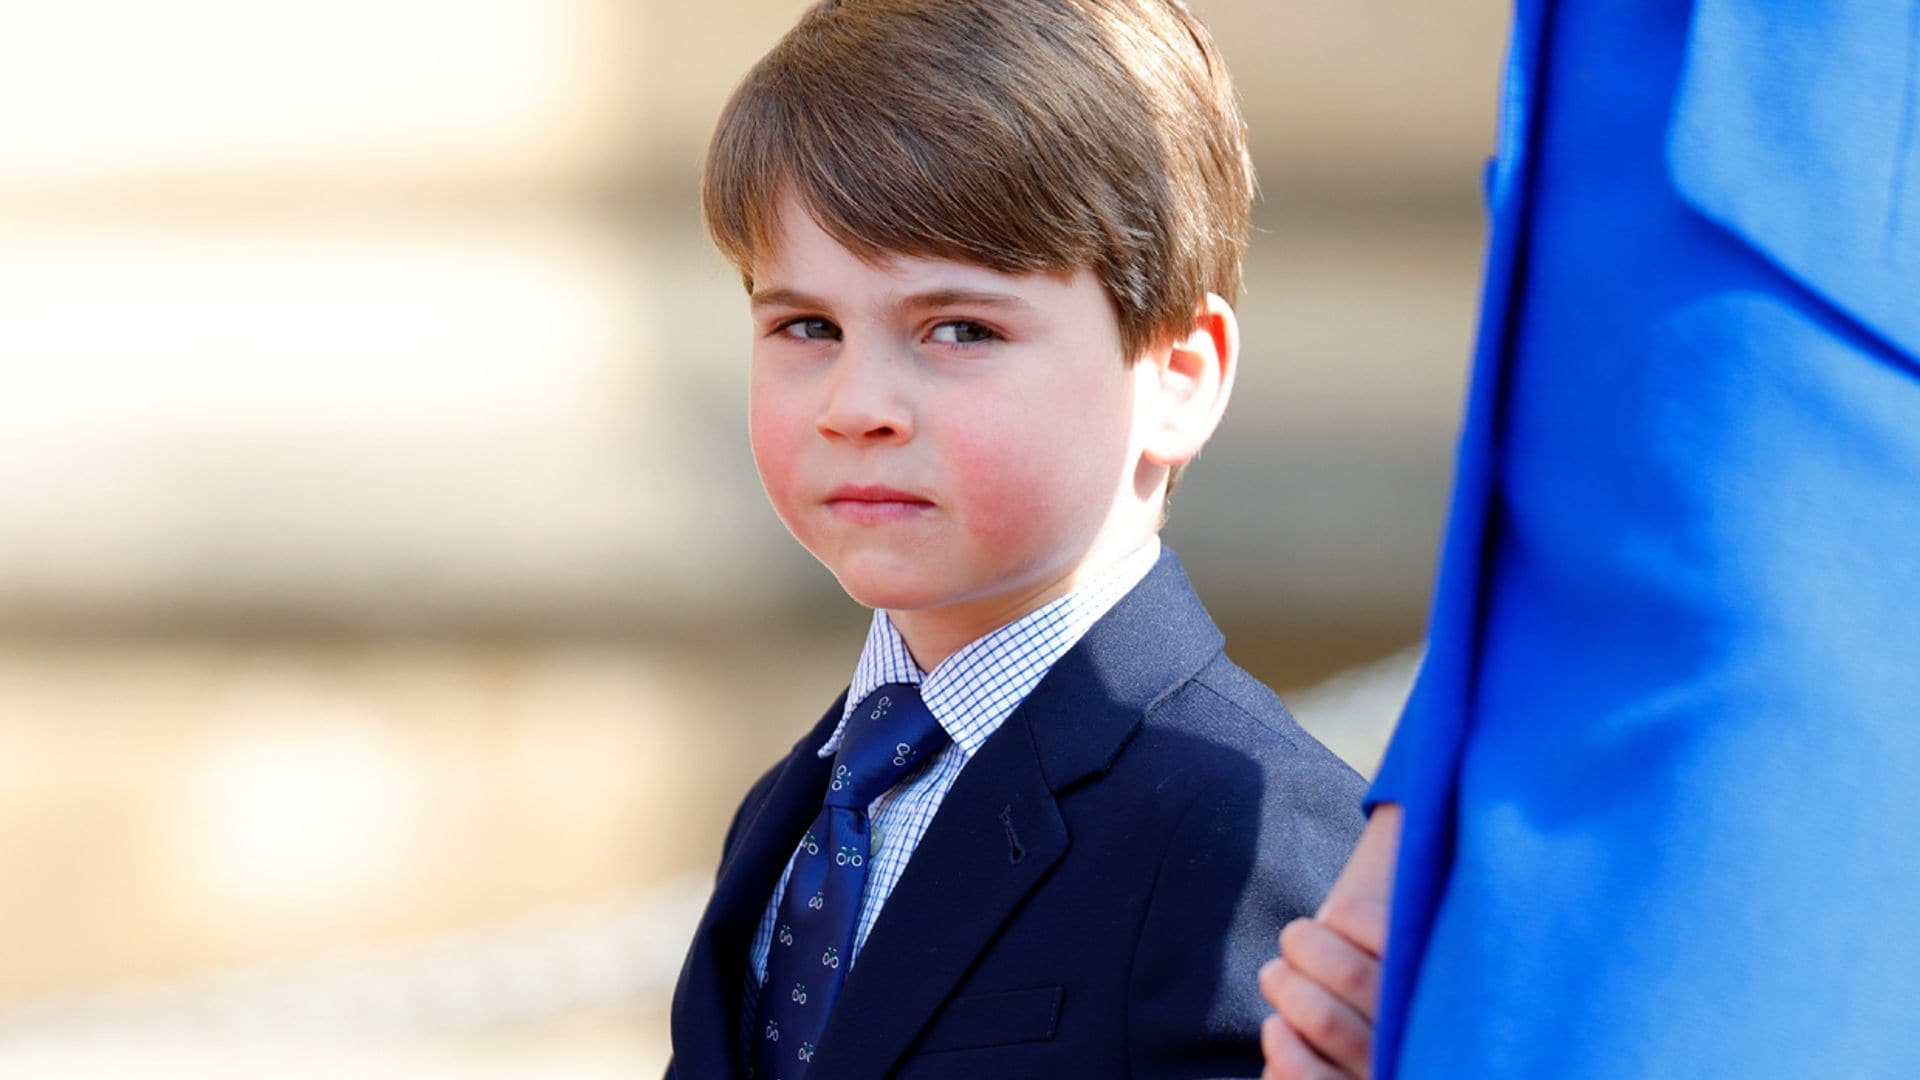 La divertida corbata española del príncipe Louis cuesta solo 22 euros